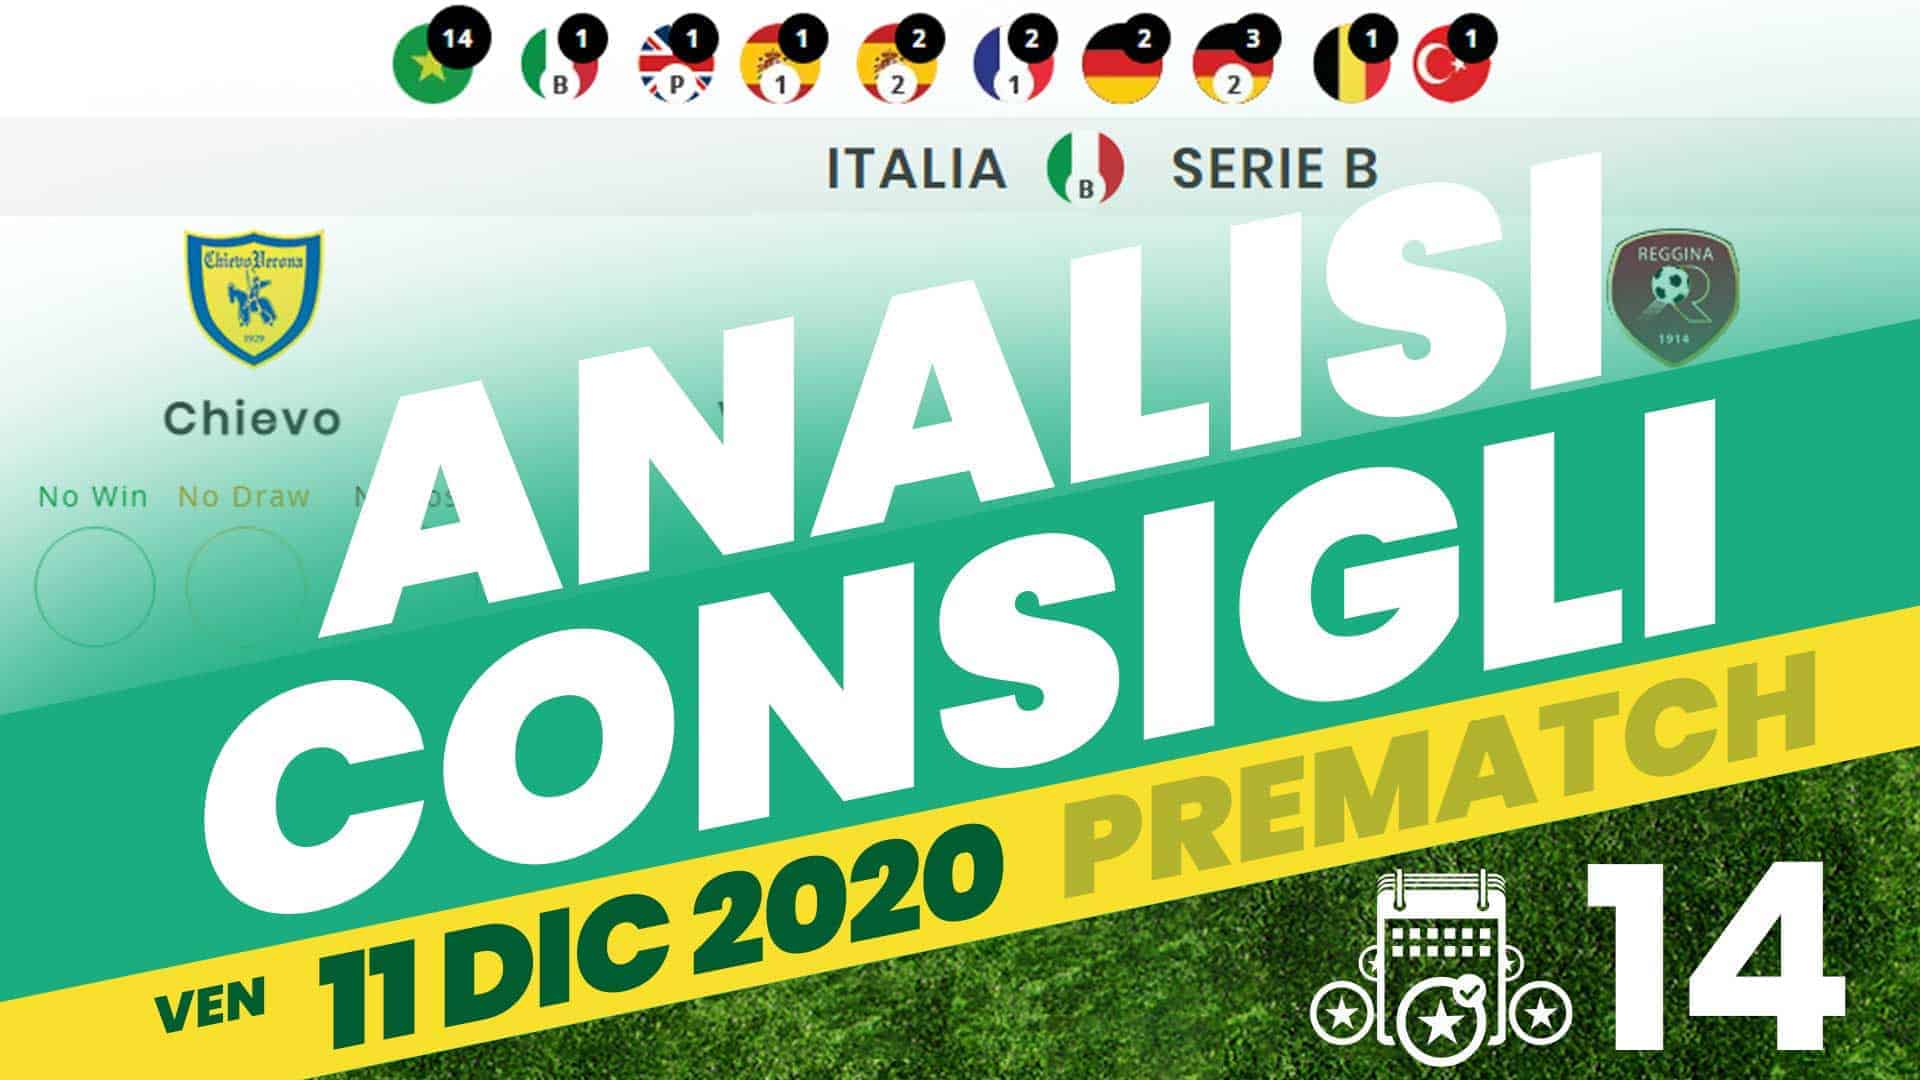 Pronostici Naturali Analisi Scommesse Betting Calcio Pre Partite Venerdi 11 Dicembre 2020